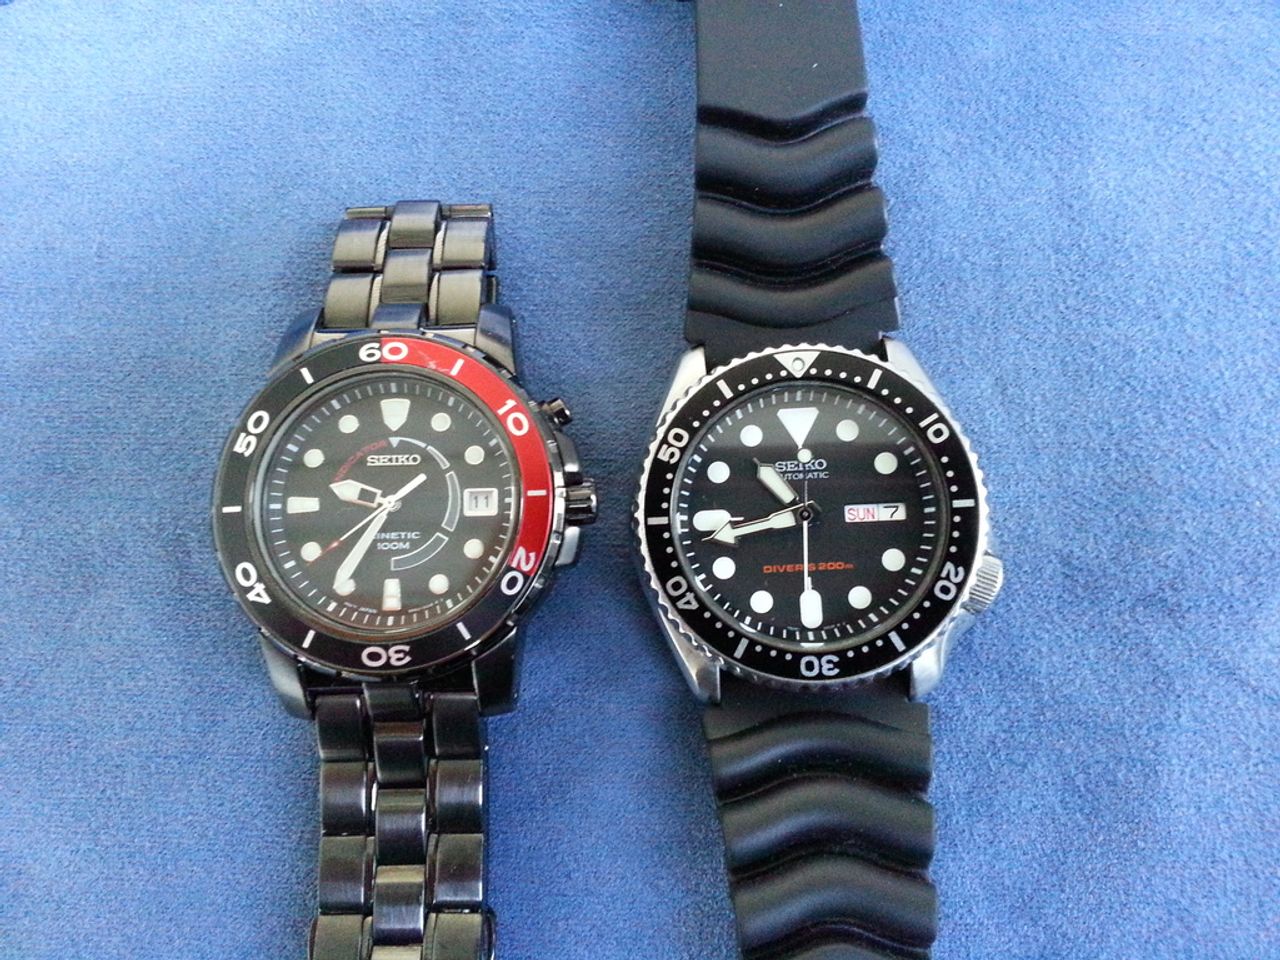 Đồng hồ Seiko Kinetic SKA413 và đồng hồ Seiko Kinetic SKA389 là hai dòng bán chạy của Seiko